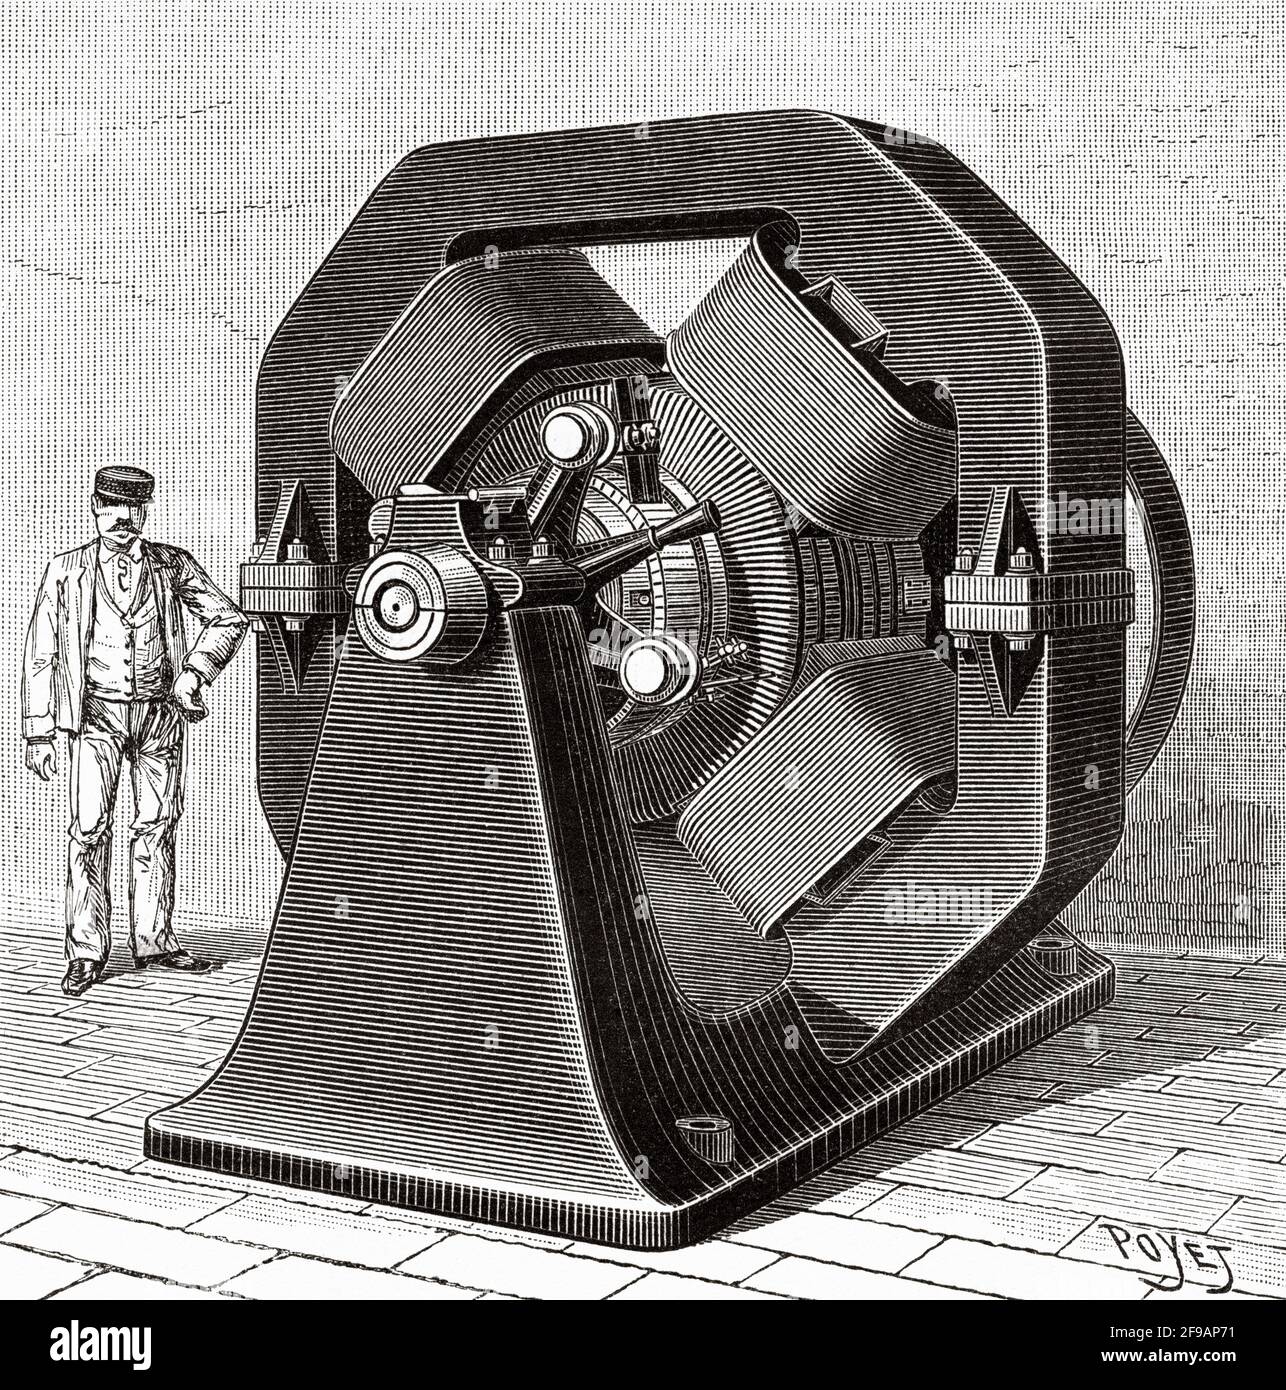 Die Herstellung von Aluminiumbronze in den späten 1800er Jahren. Elektrometallurgische Dynamo-Maschine. Alte, gravierte Illustration aus dem 19. Jahrhundert von La Nature 1889 Stockfoto